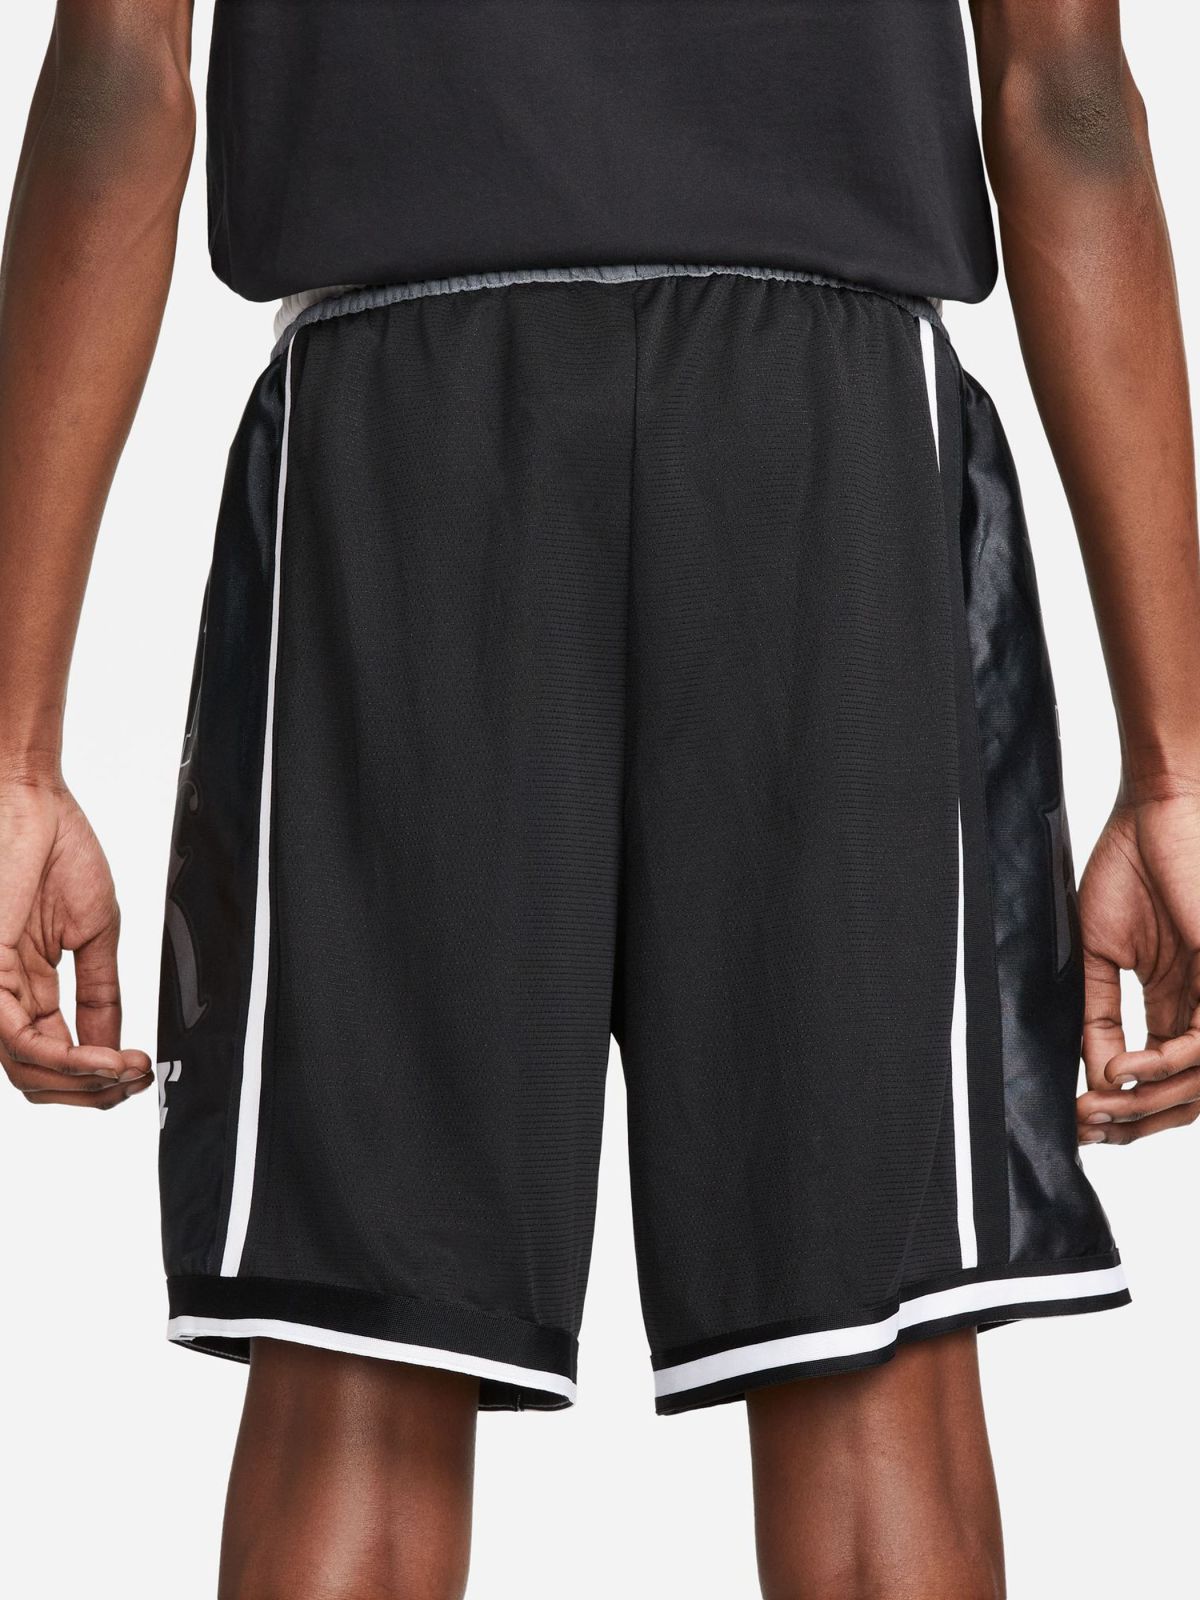  מכנסי כדורסל Nike Dri-FIT DNA של NIKE